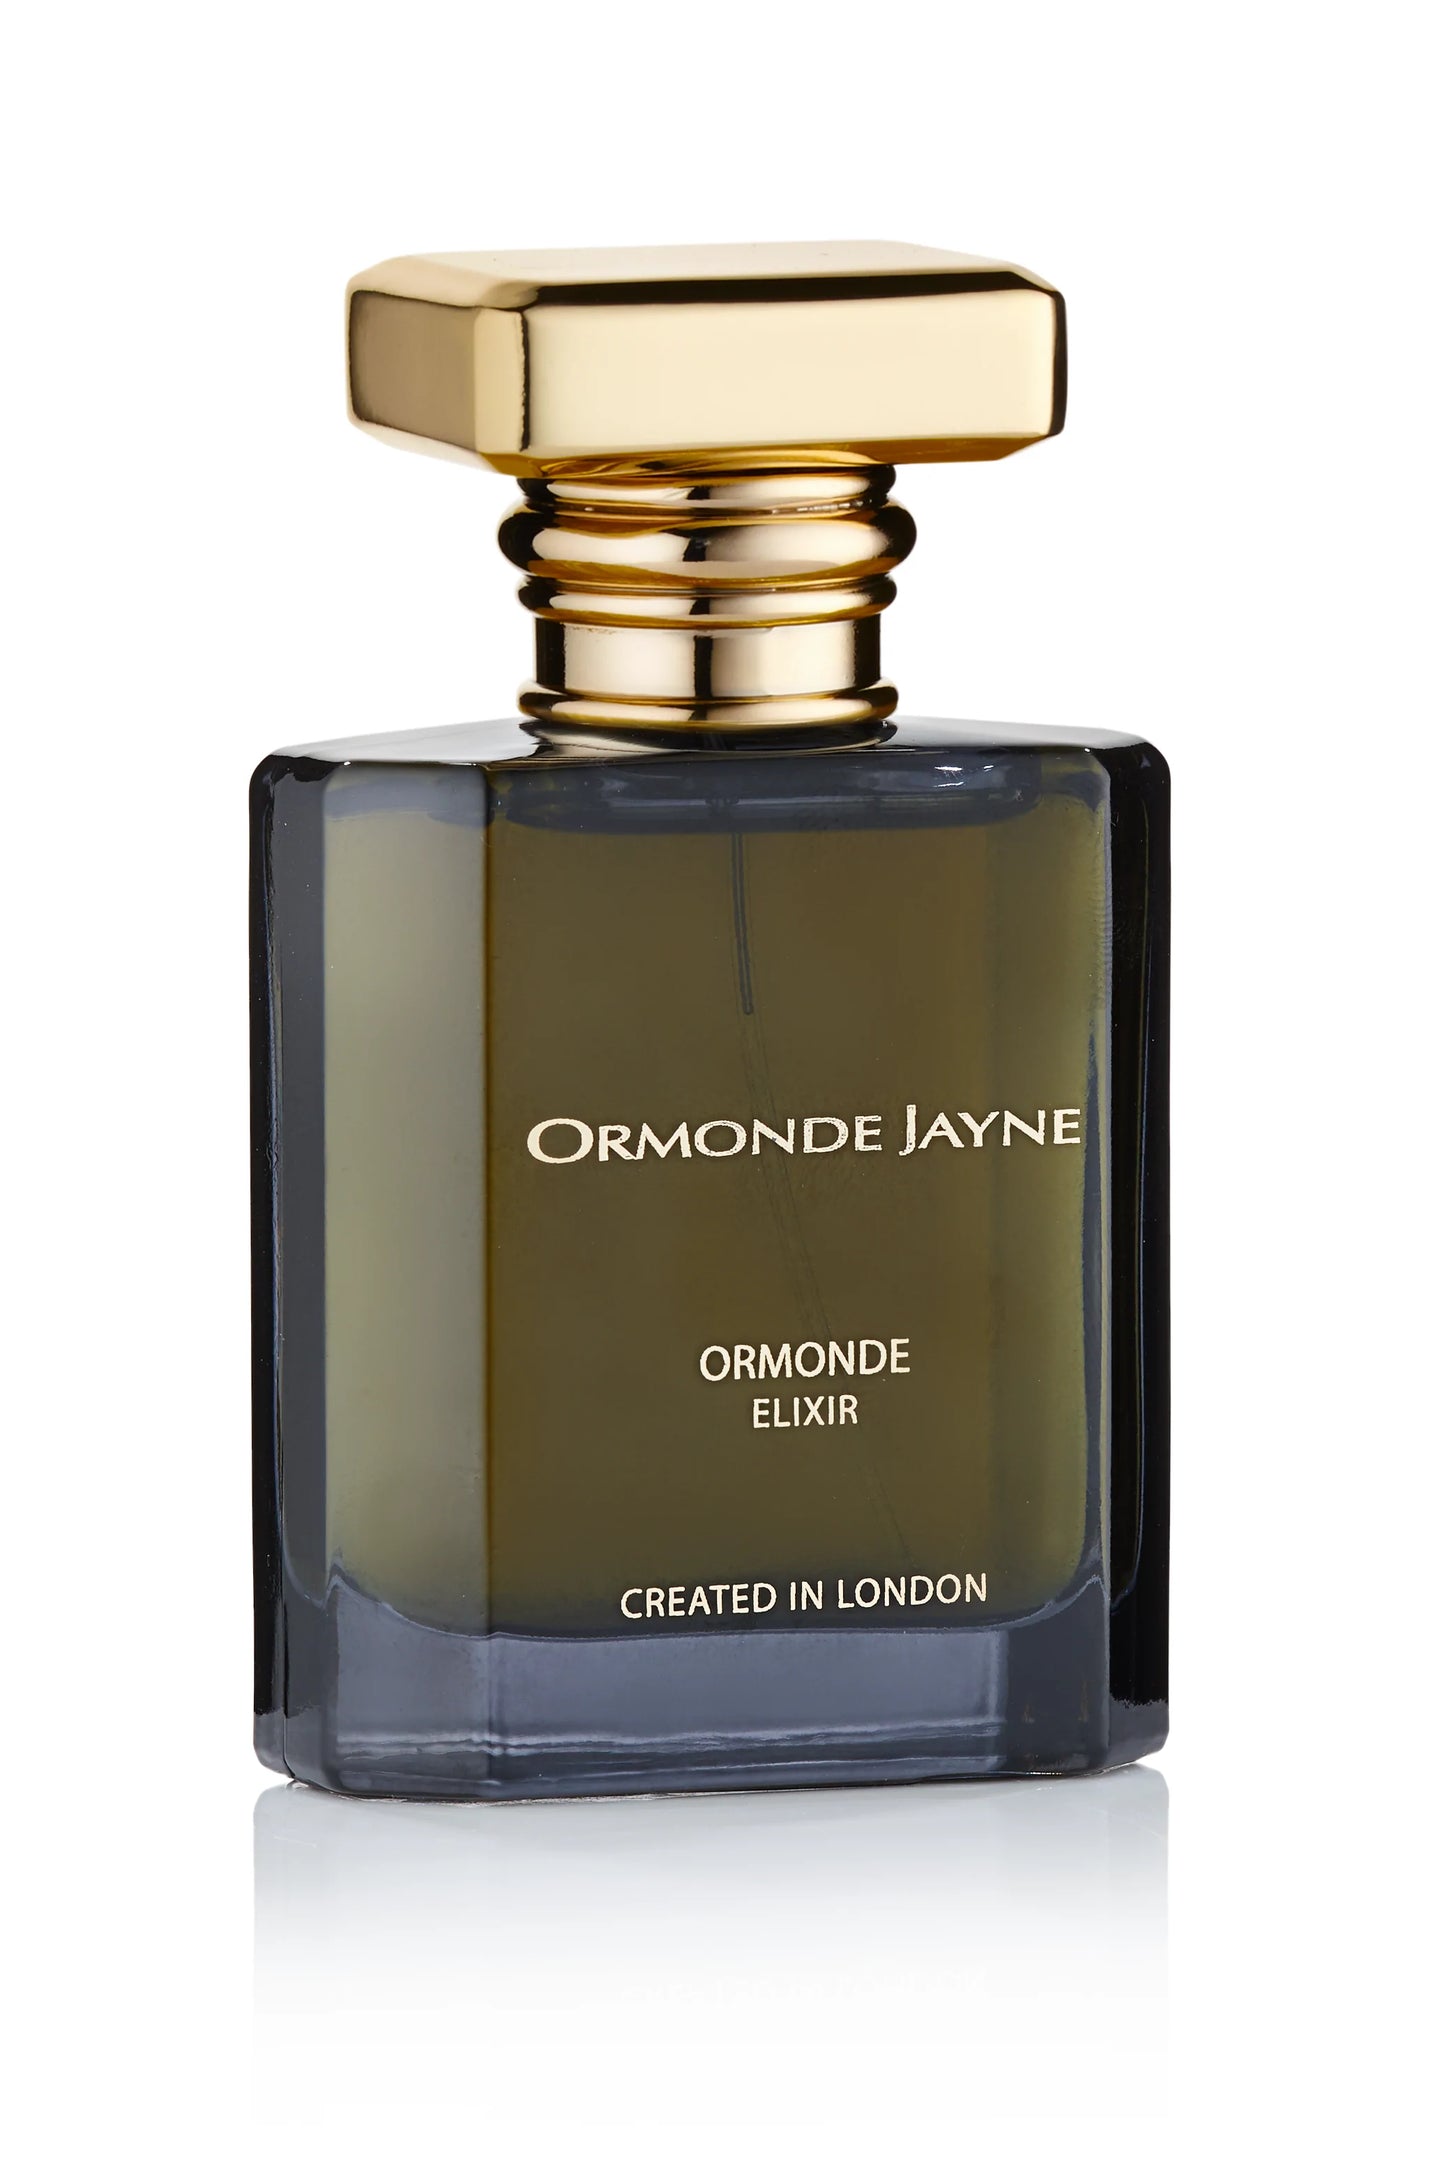 Ormonde Jayne Ormonde Elixir 2ml 0.06 fl. oz amostra oficial de fragrância